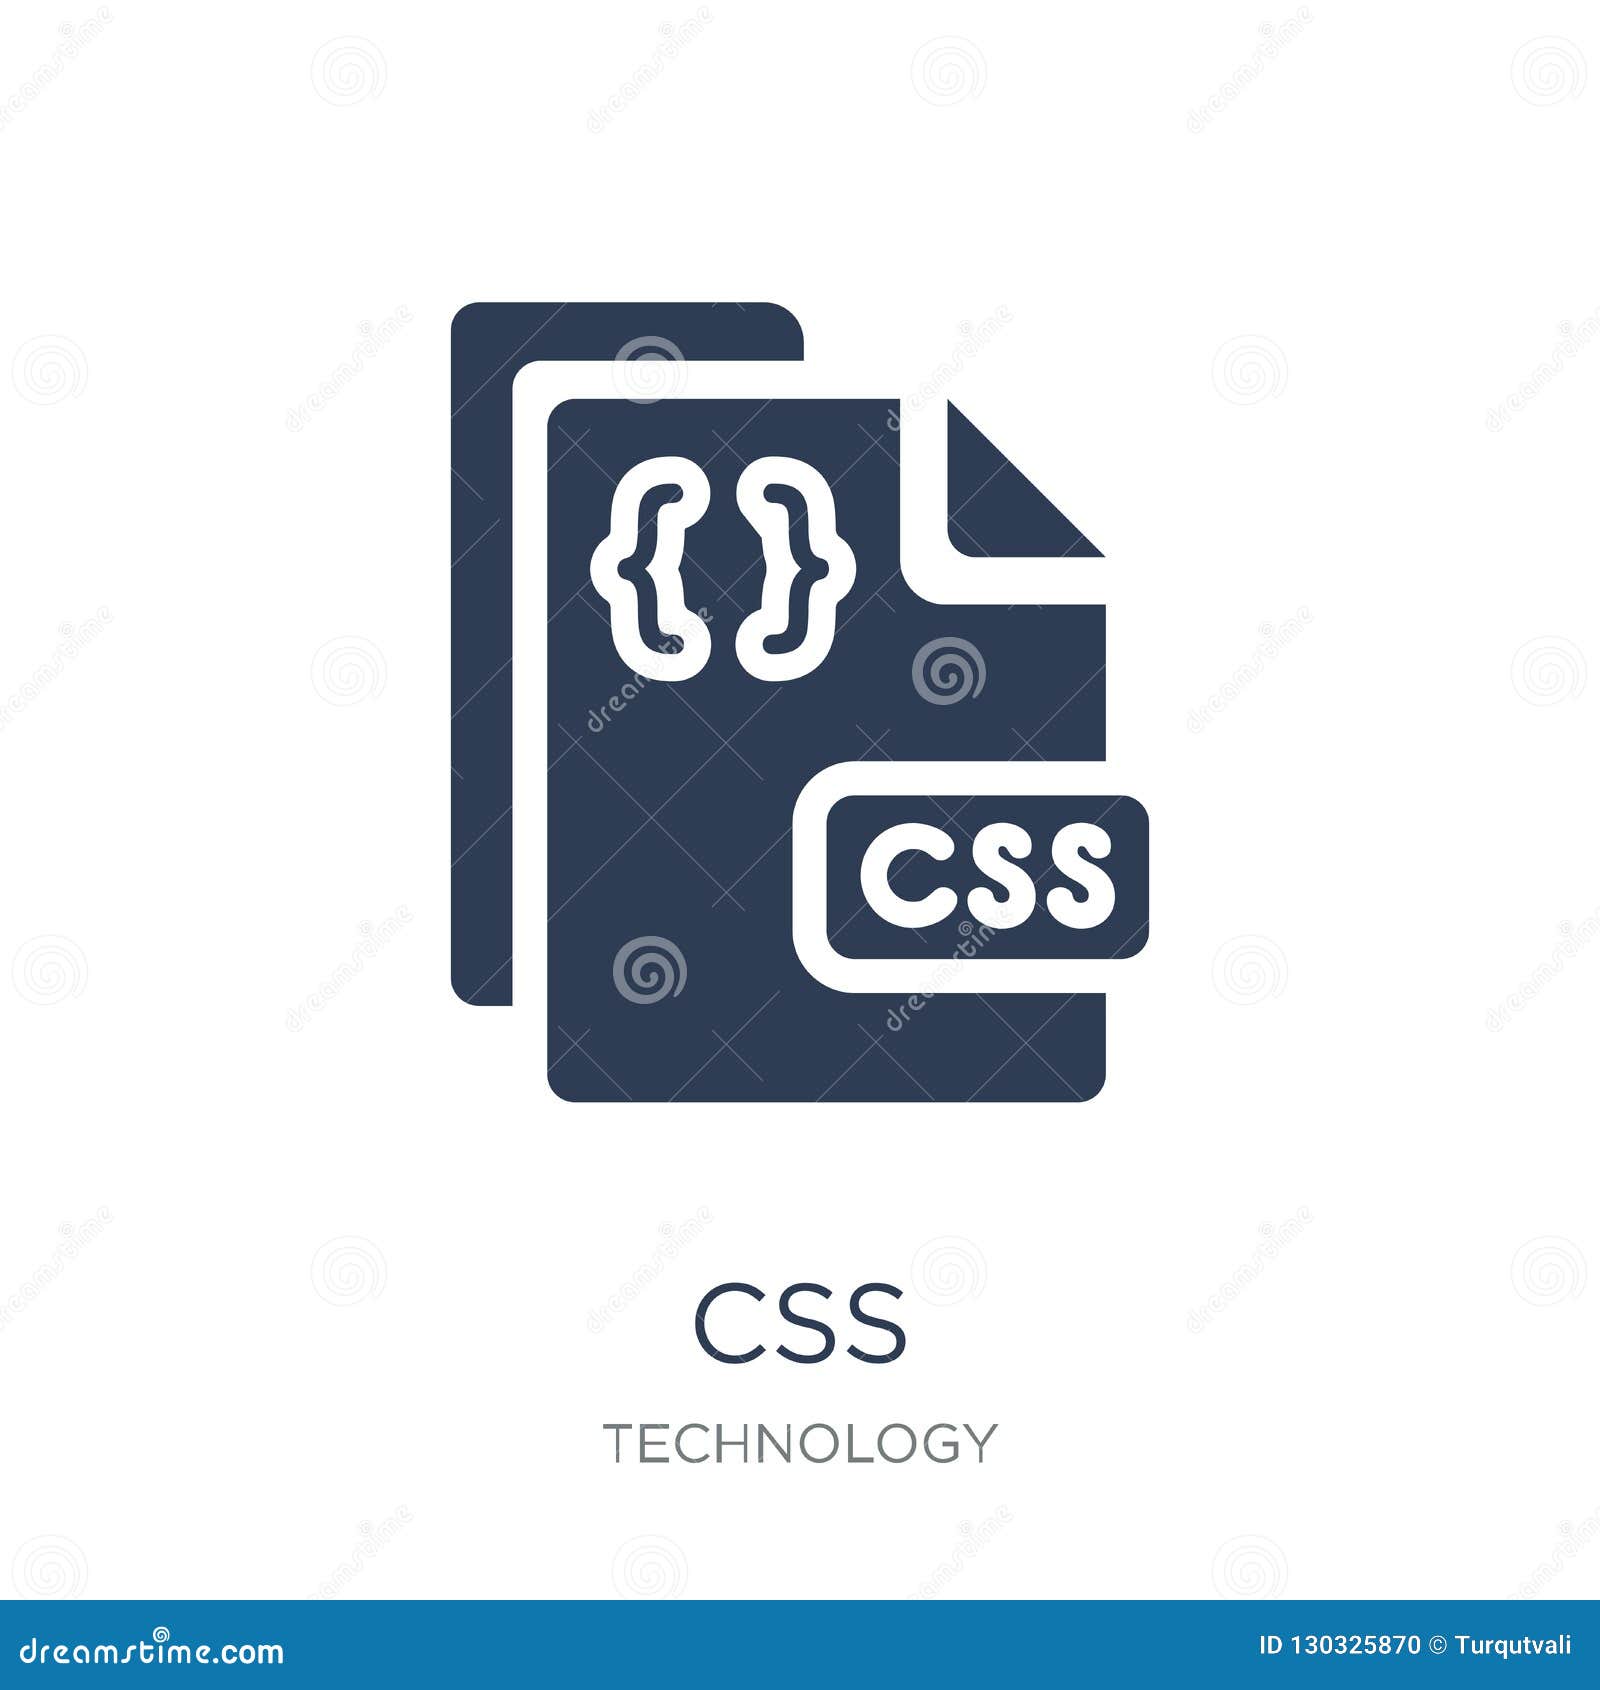 CSS Icon: Hãy khám phá biểu tượng CSS vô cùng độc đáo và thu hút này để biết thêm về kiến trúc web. Đây là một biểu tượng sáng tạo để thể hiện năng lực của bạn trong lĩnh vực này.